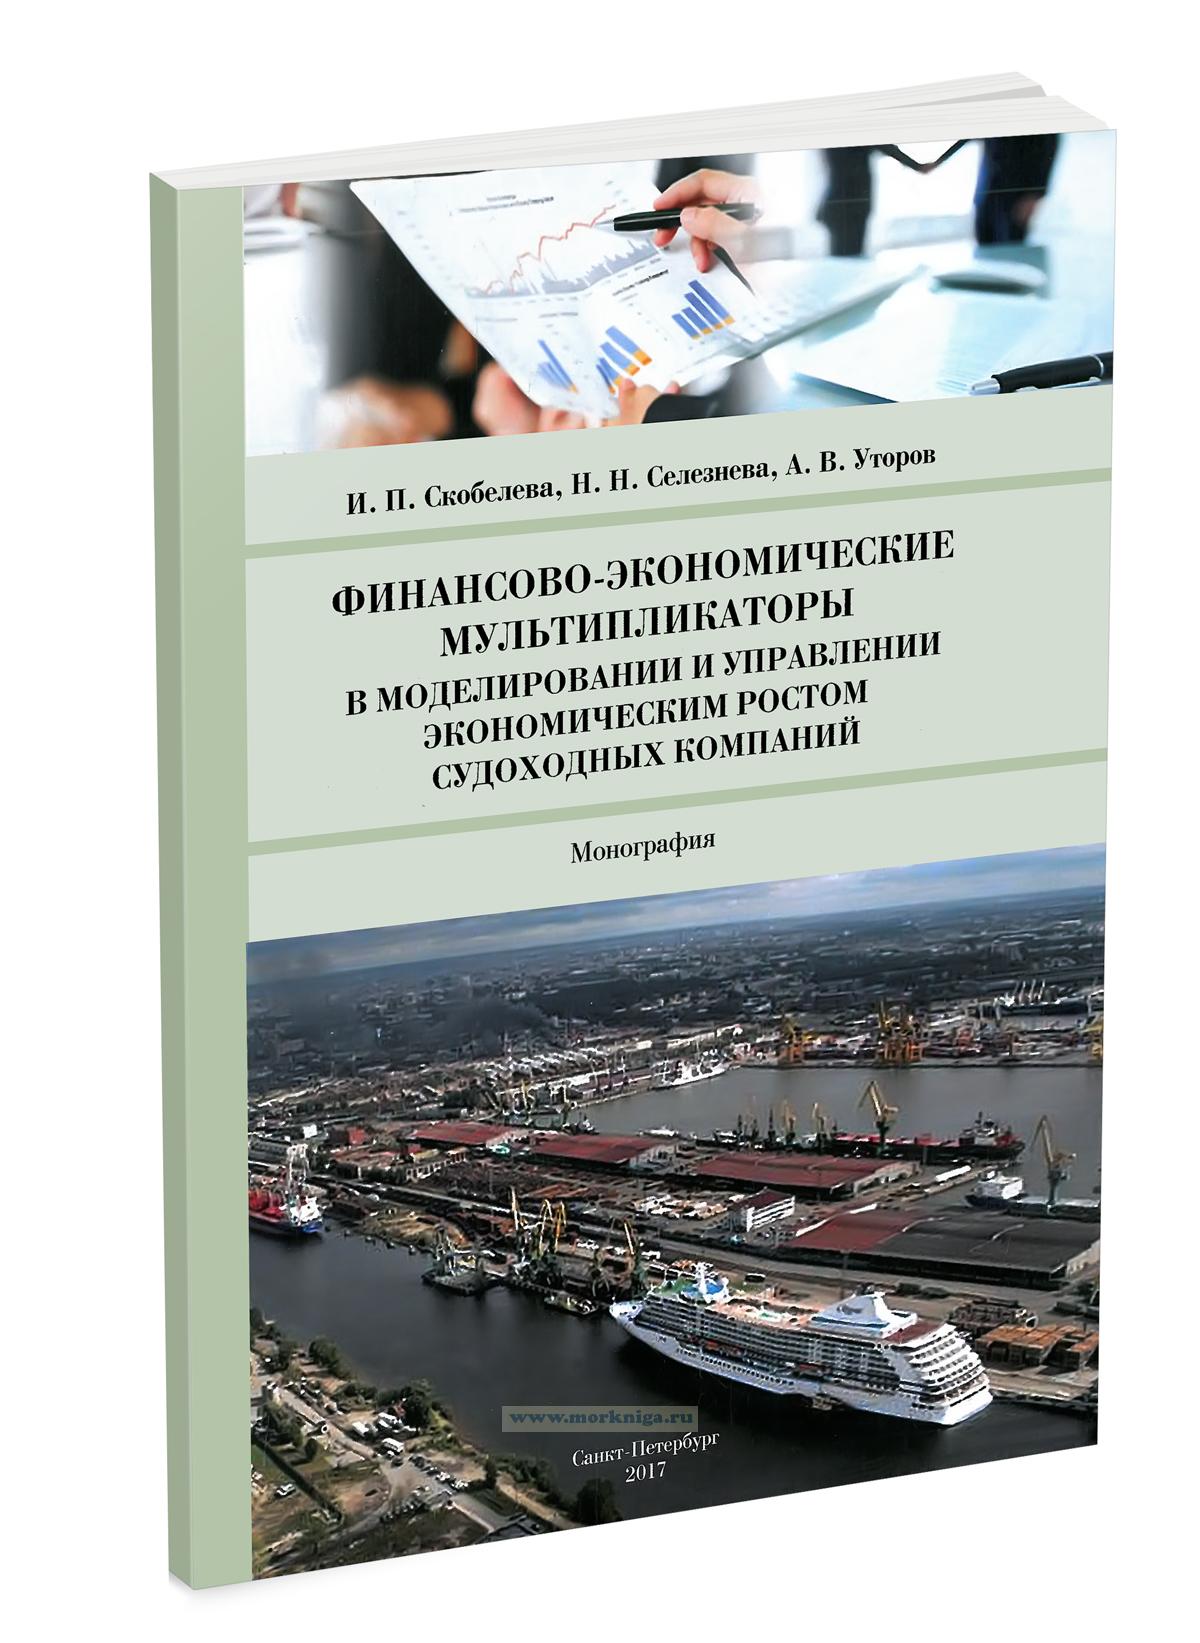 Финансово-экономические мультипликаторы в моделировании и управлении экономическим ростом судоходных компаний: монография